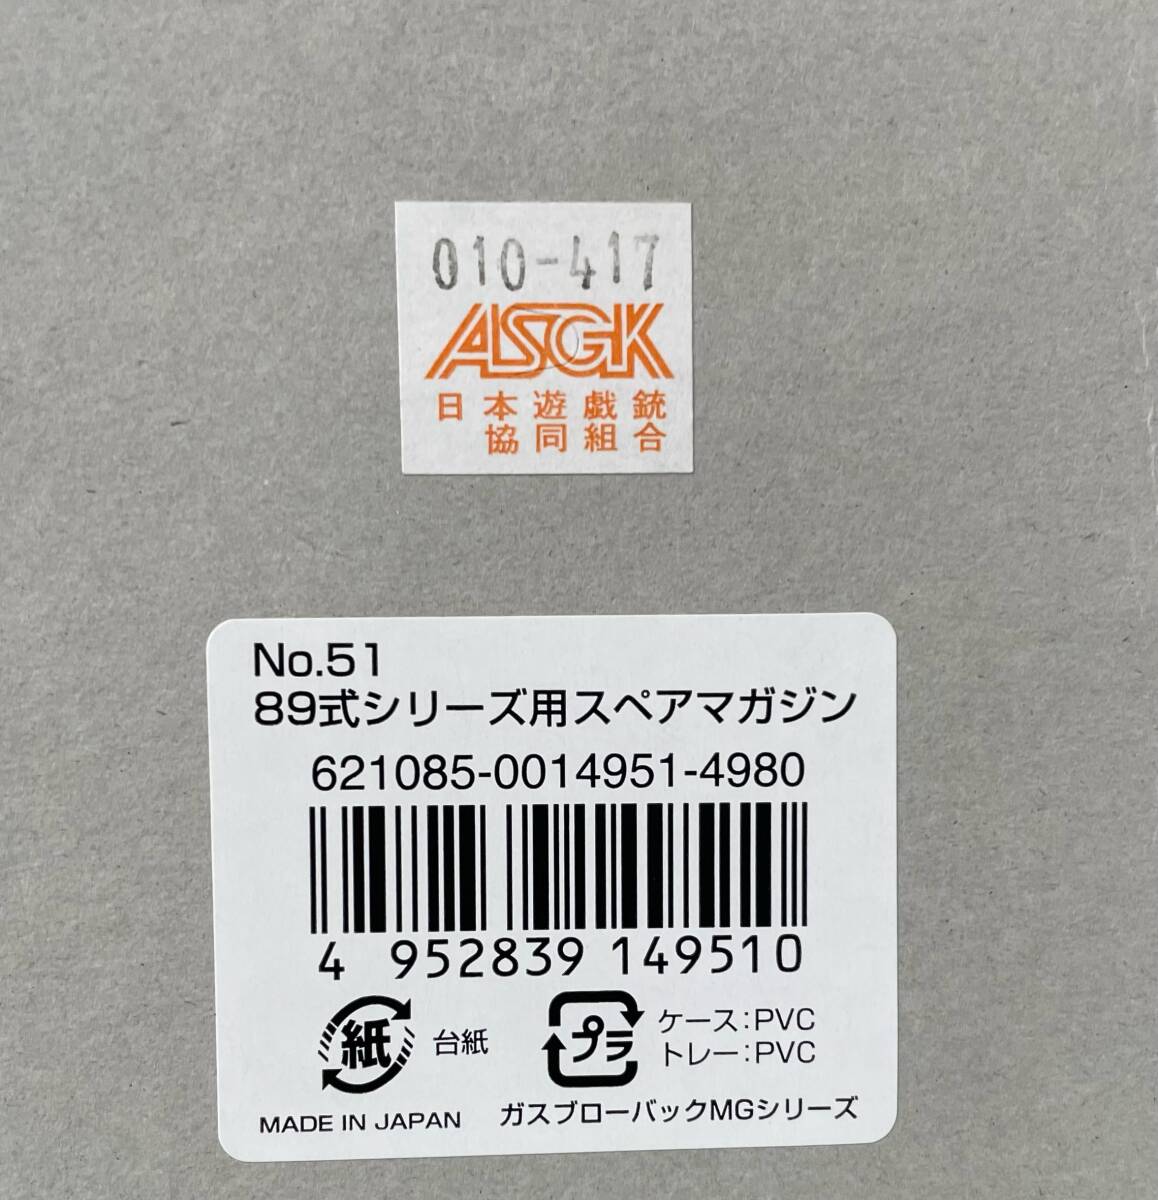  дешевый!! 99 иен старт!! Tokyo Marui запасной журнал 35 полосный газовый пистолет 89 тип для TOKYO MARUI газовый пистолет для газ свободный затвор 